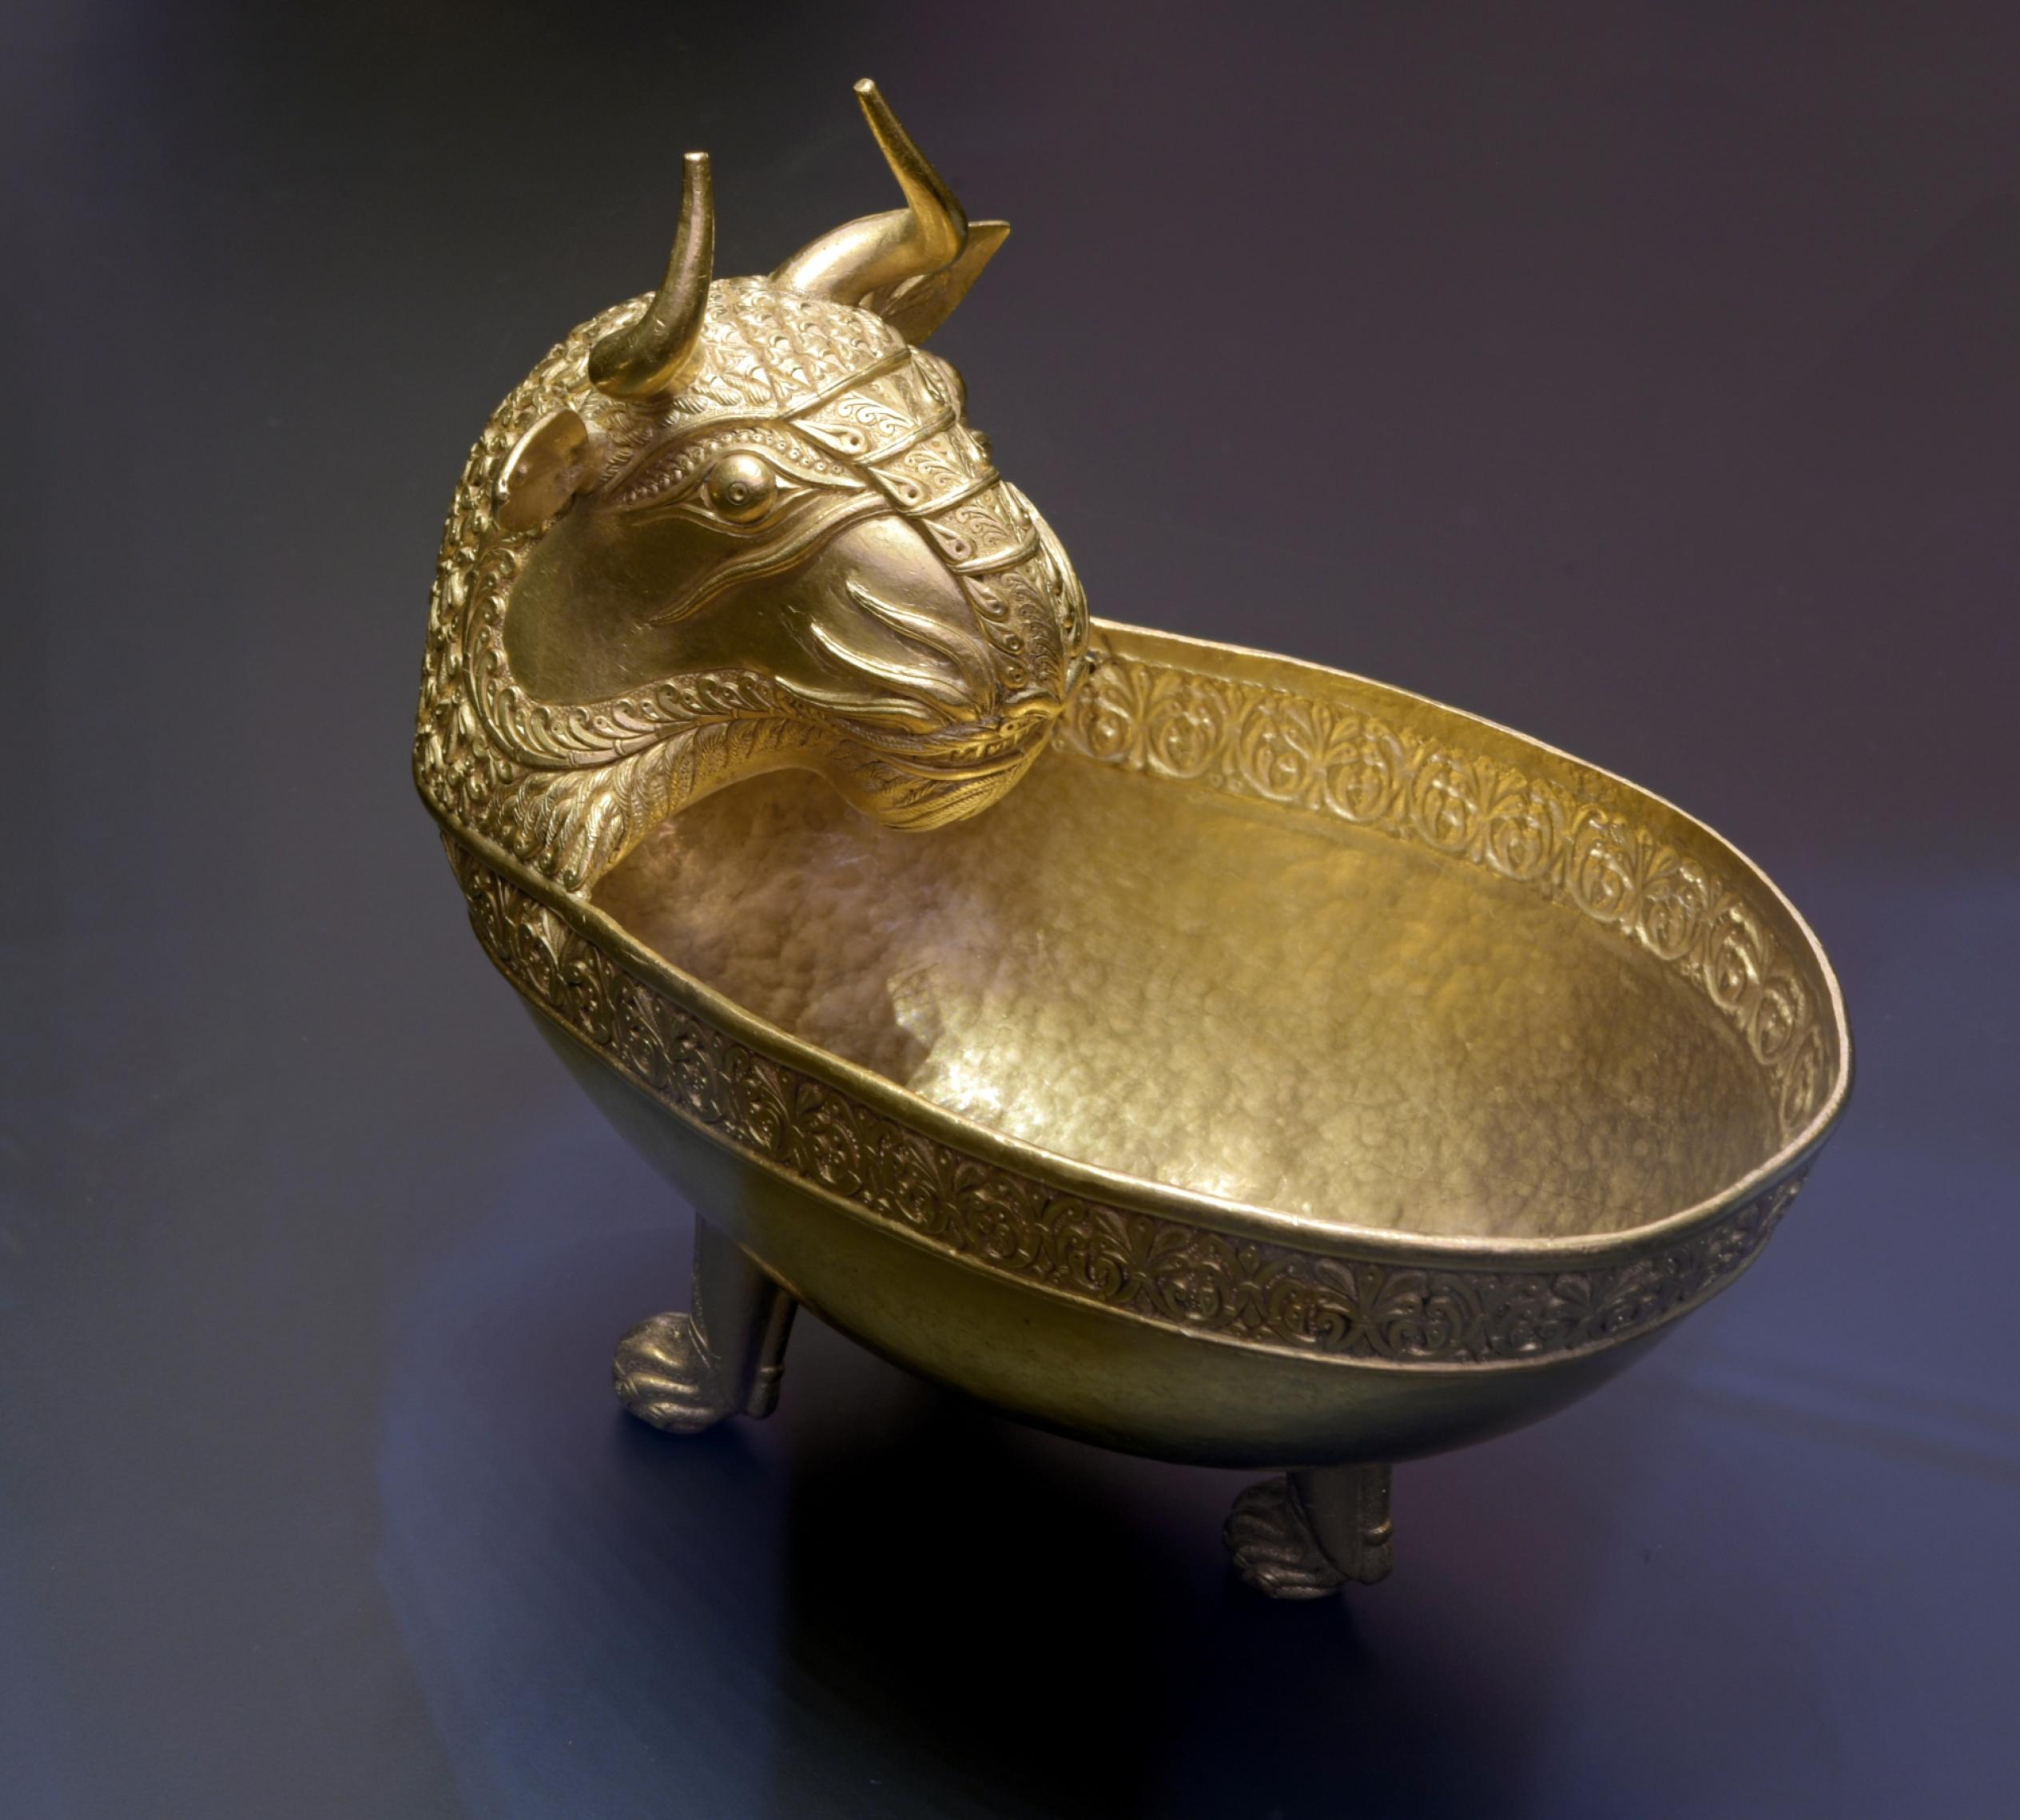 Das Bild zeigt eine goldene Schale, die auf drei Füßen aufgestellt wird. Sie geht in den Kopf eines gehörnten Löwen über und ist sehr fein gearbeitet.